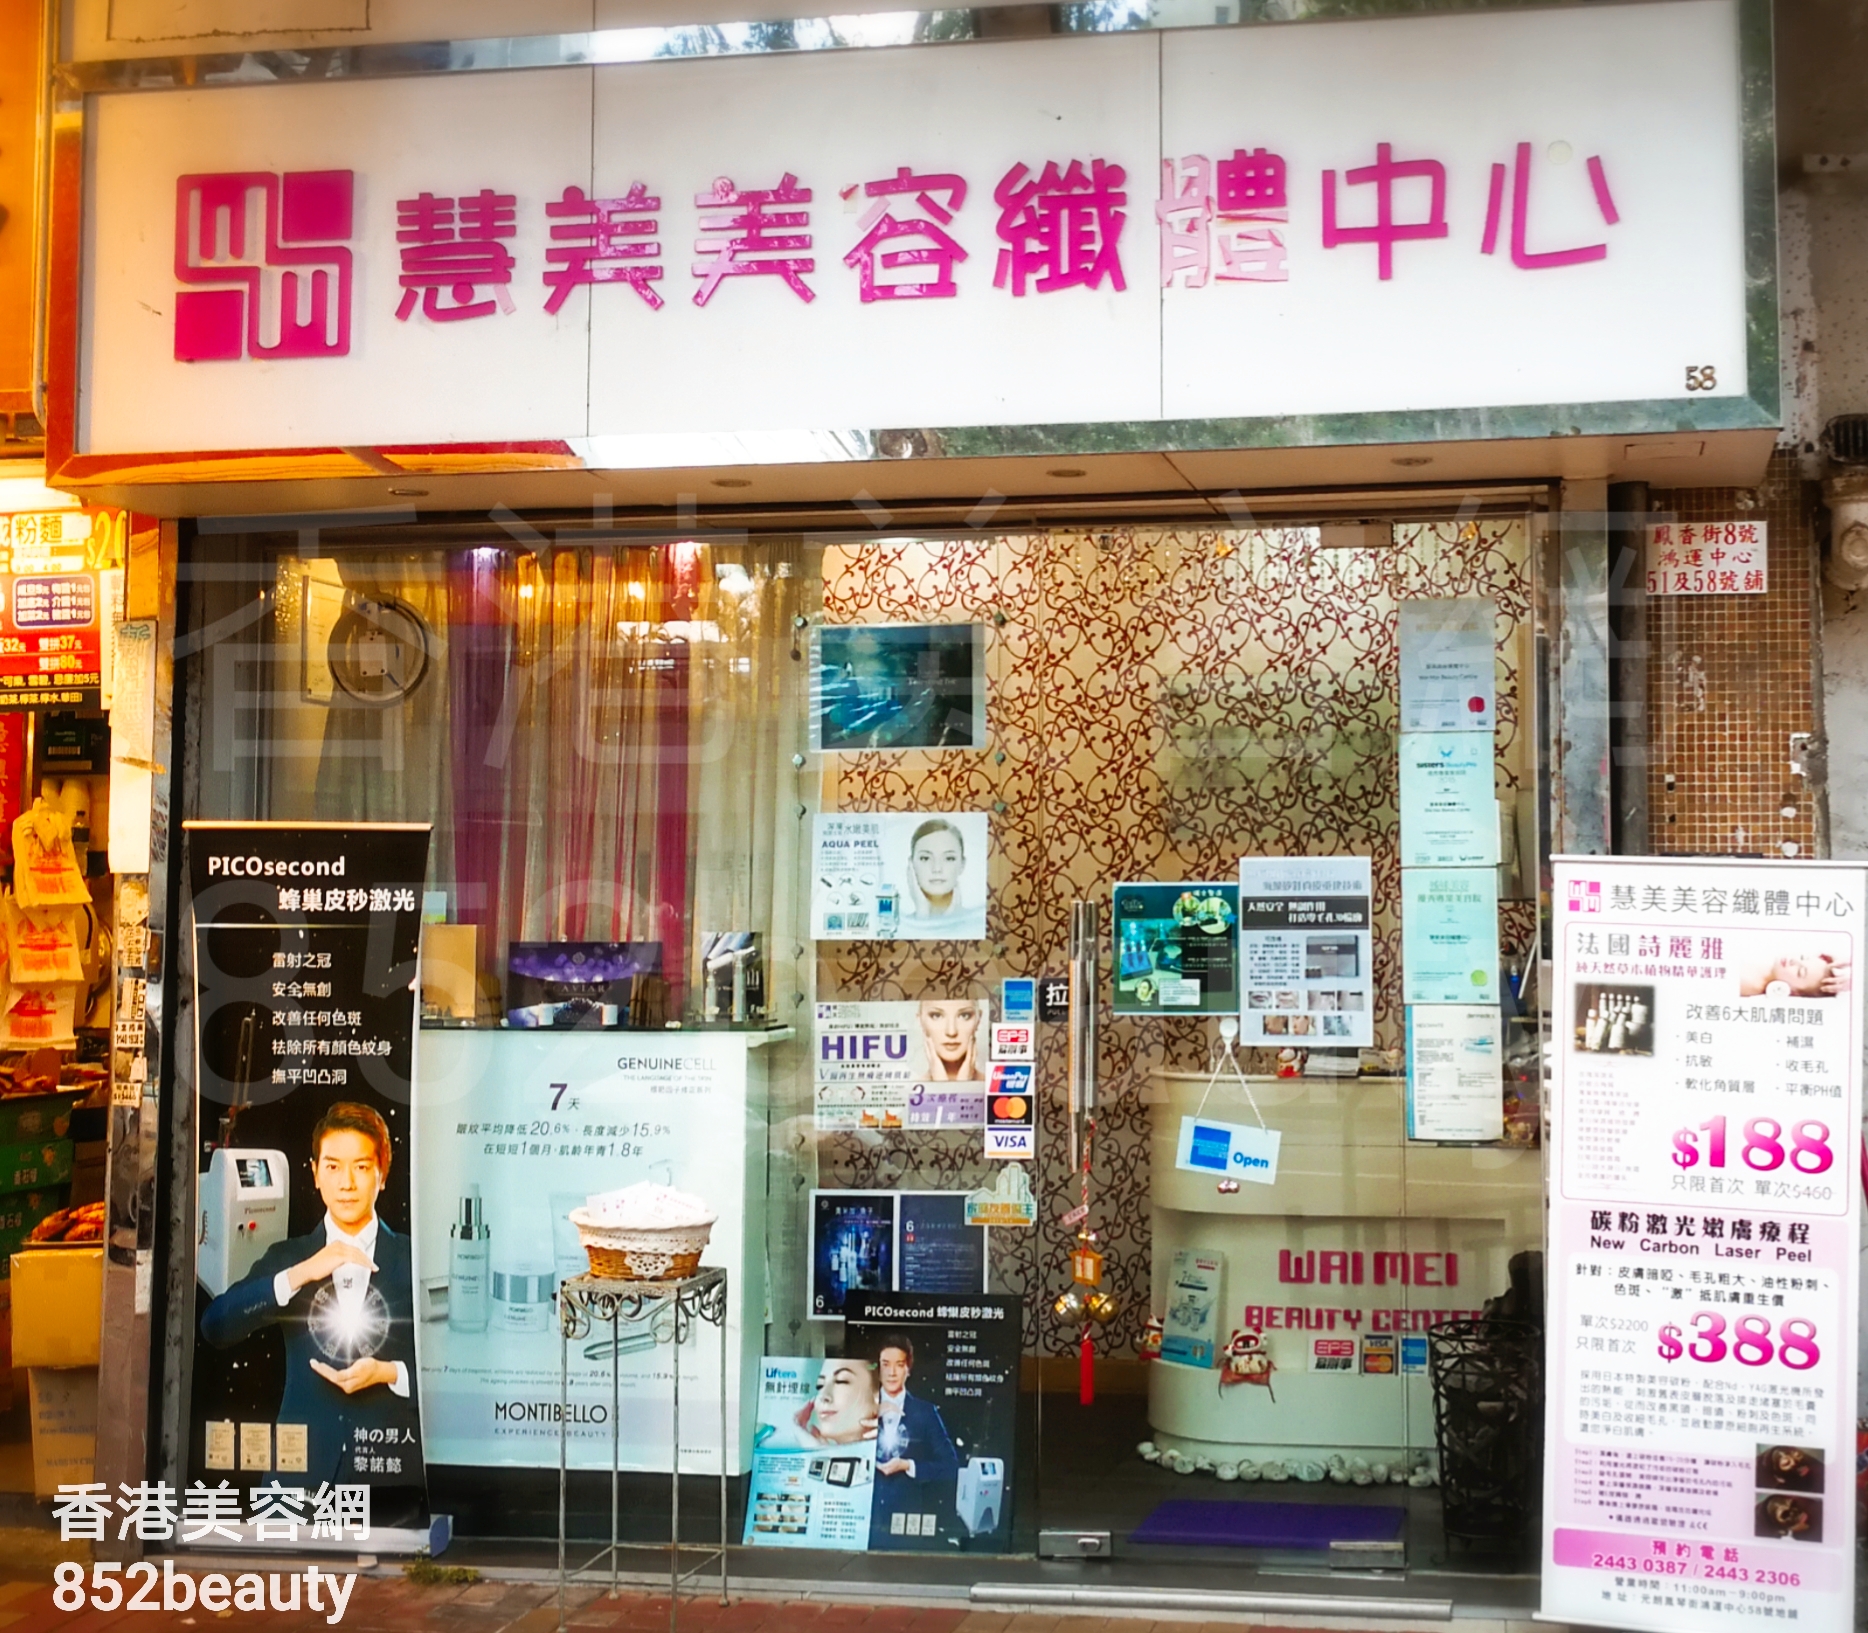 香港美容網 Hong Kong Beauty Salon 美容院 / 美容師: 慧美美容纖體中心